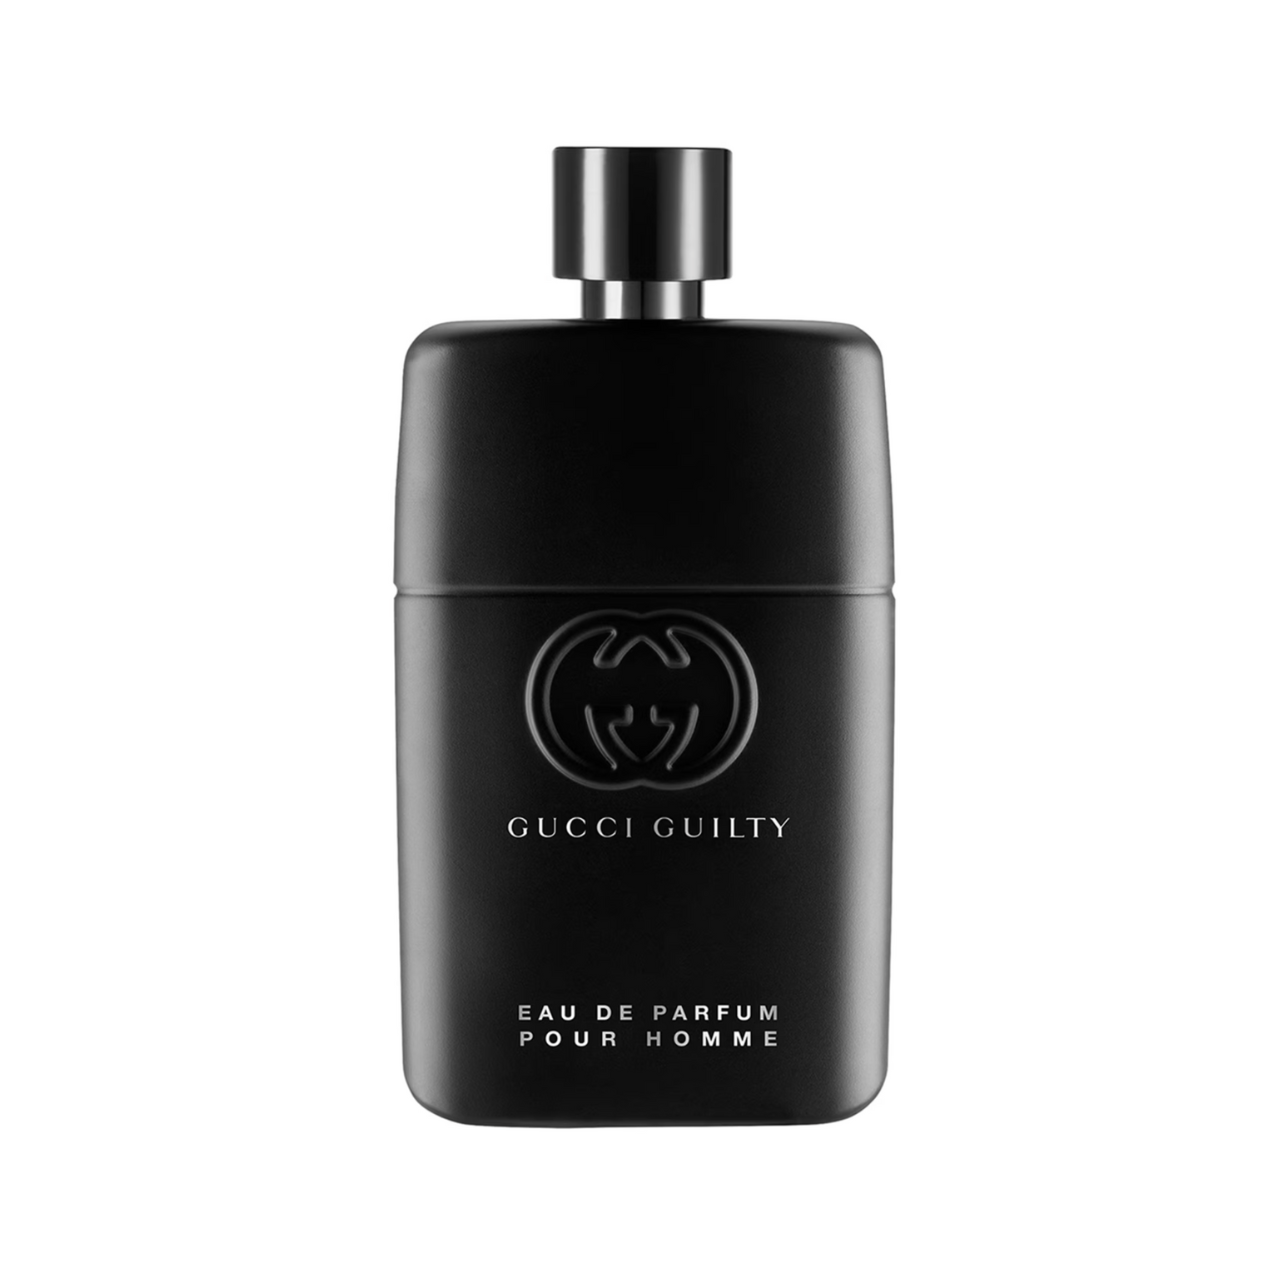 Gucci Guilty Eau de Parfum For Him | Gucci